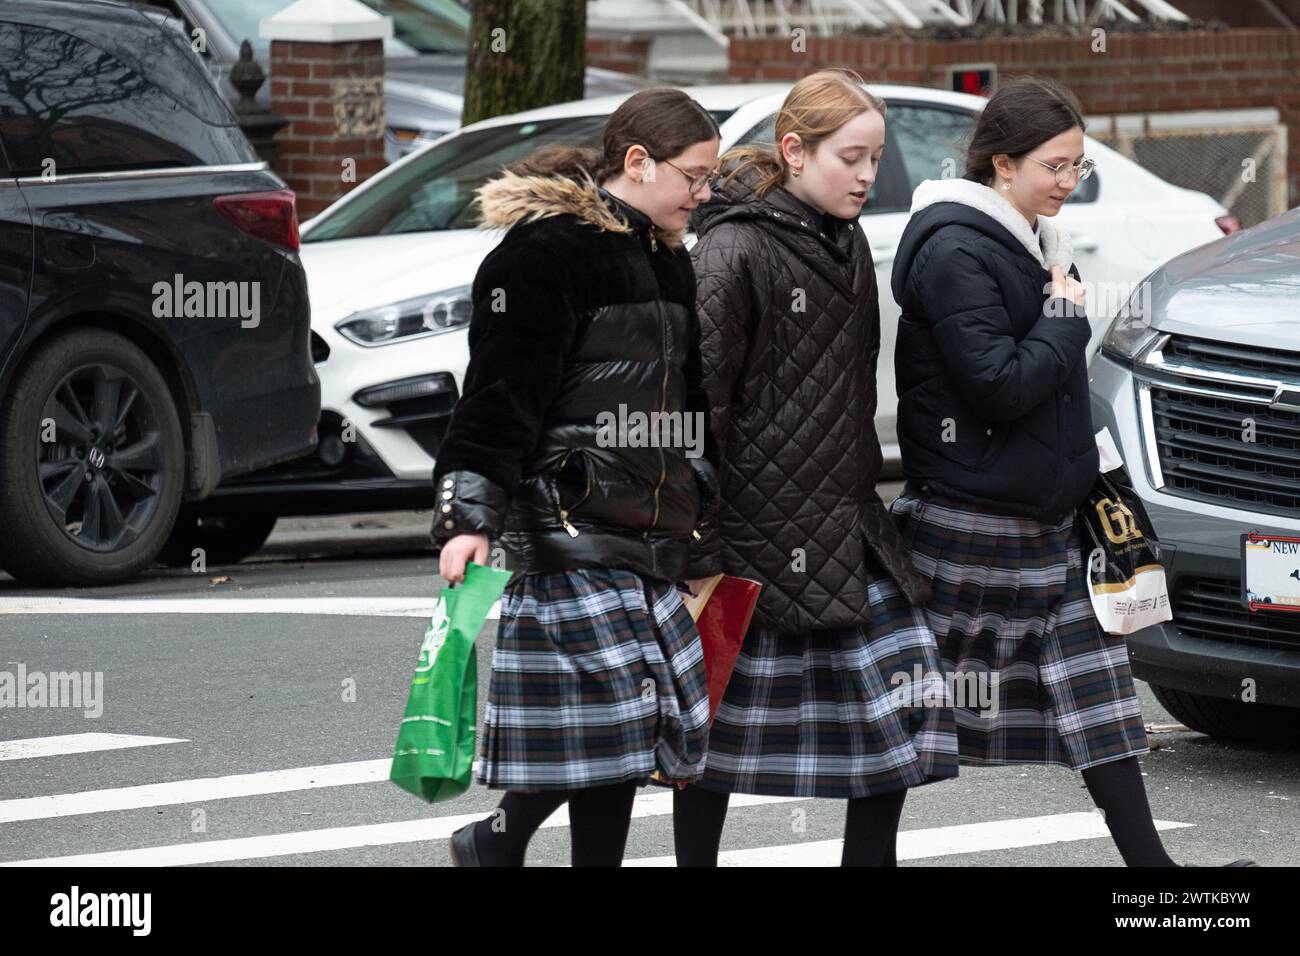 Compagni di classe ebrei ortodossi che indossano le stesse gonne tartan attraversano una strada a Brooklyn, New York. Foto Stock